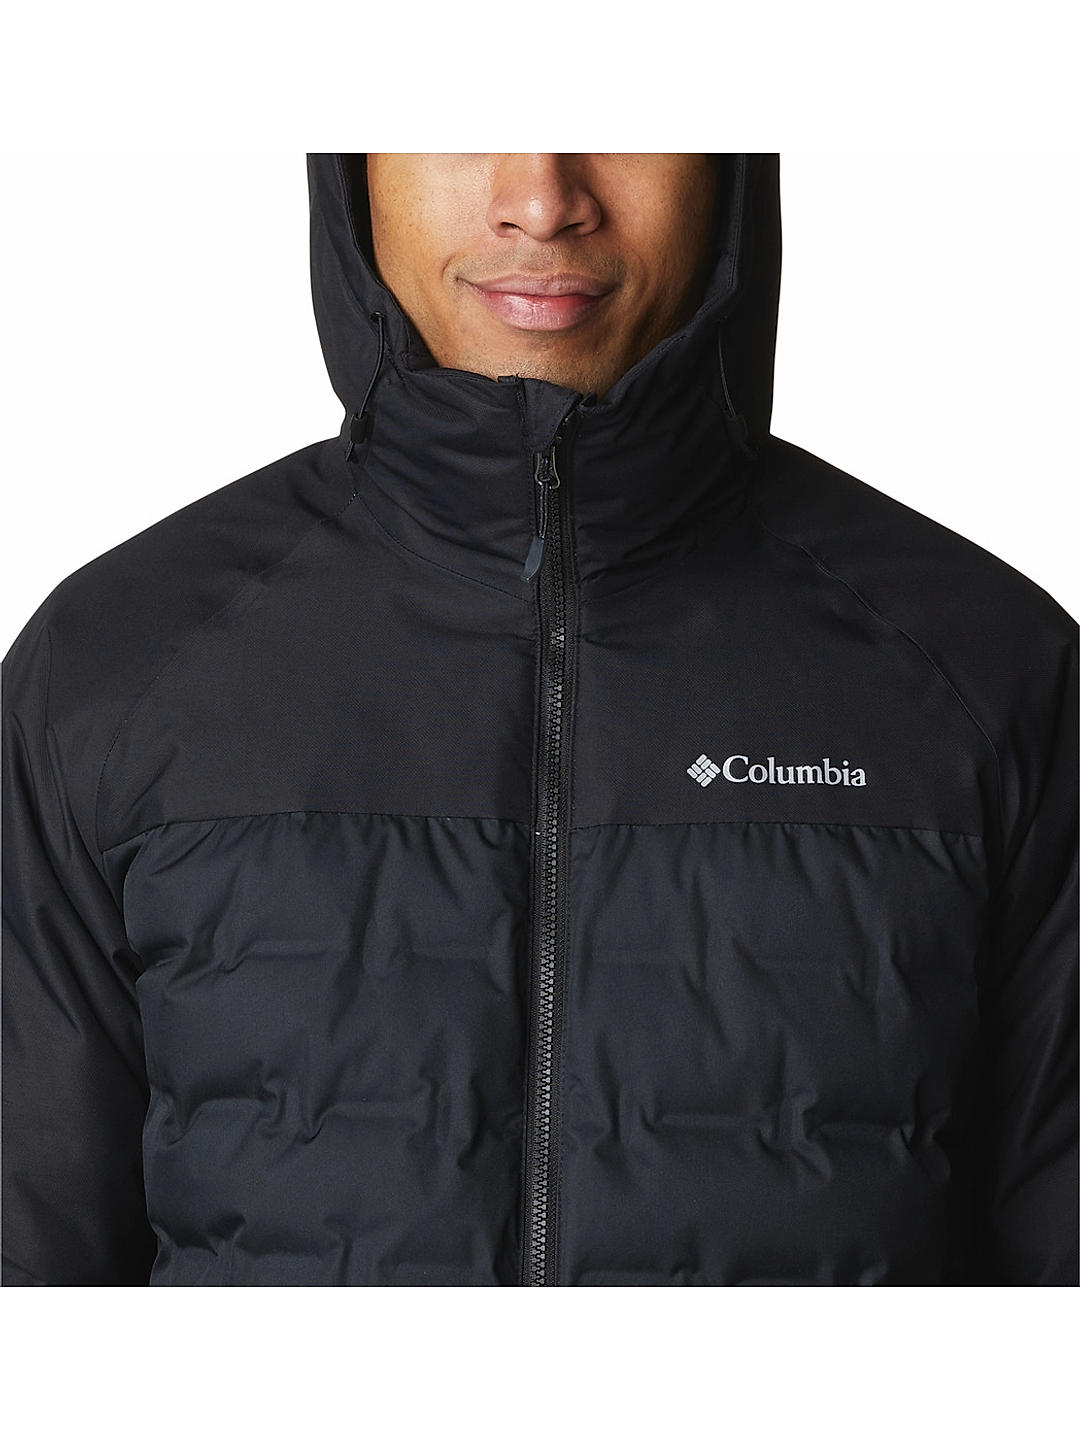 Columbia | Winter Pass Sherpa Jacket - Chalk | The Sports Edit